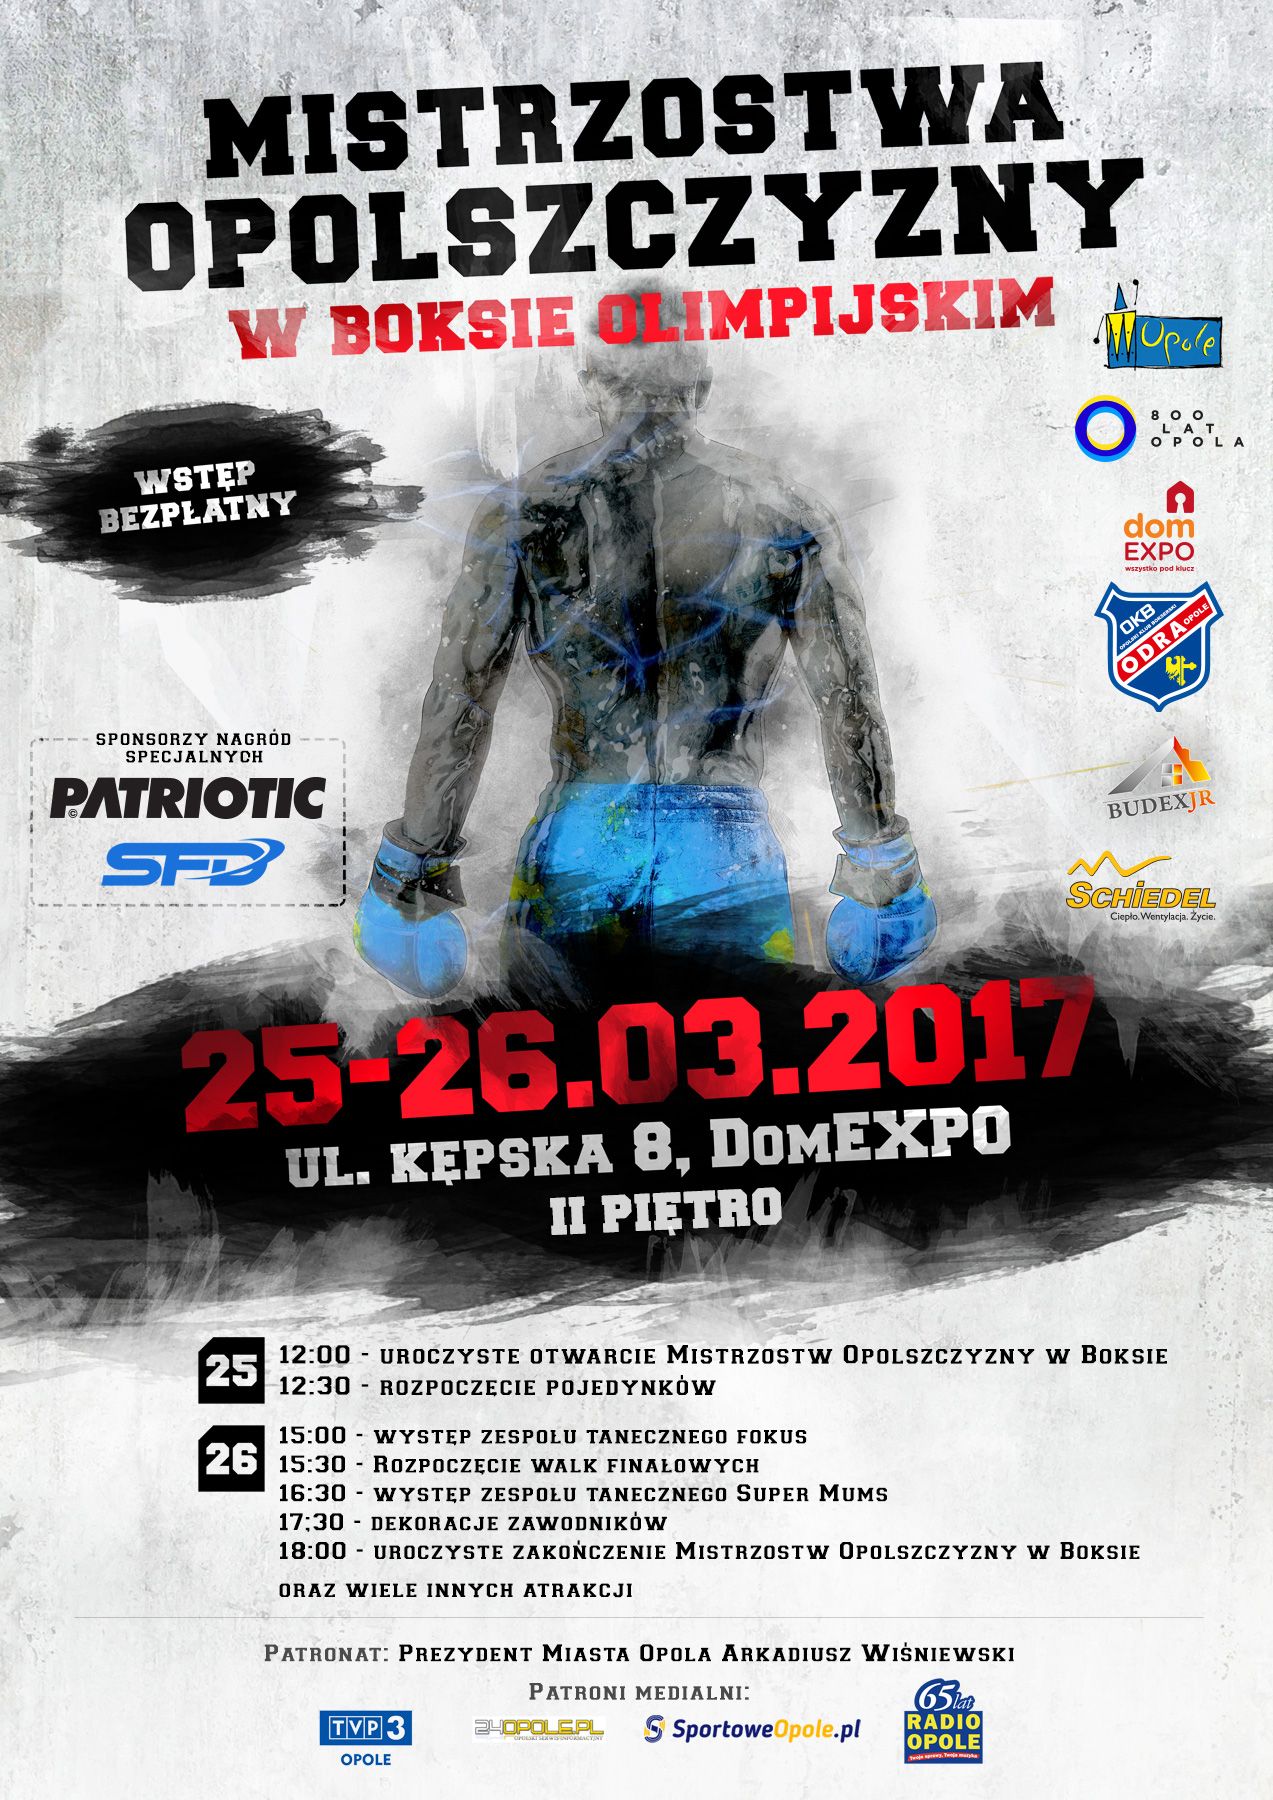 Mistrzostwa Opolszczyzny w Boksie Olimpijskim przez weekend w domEXPO